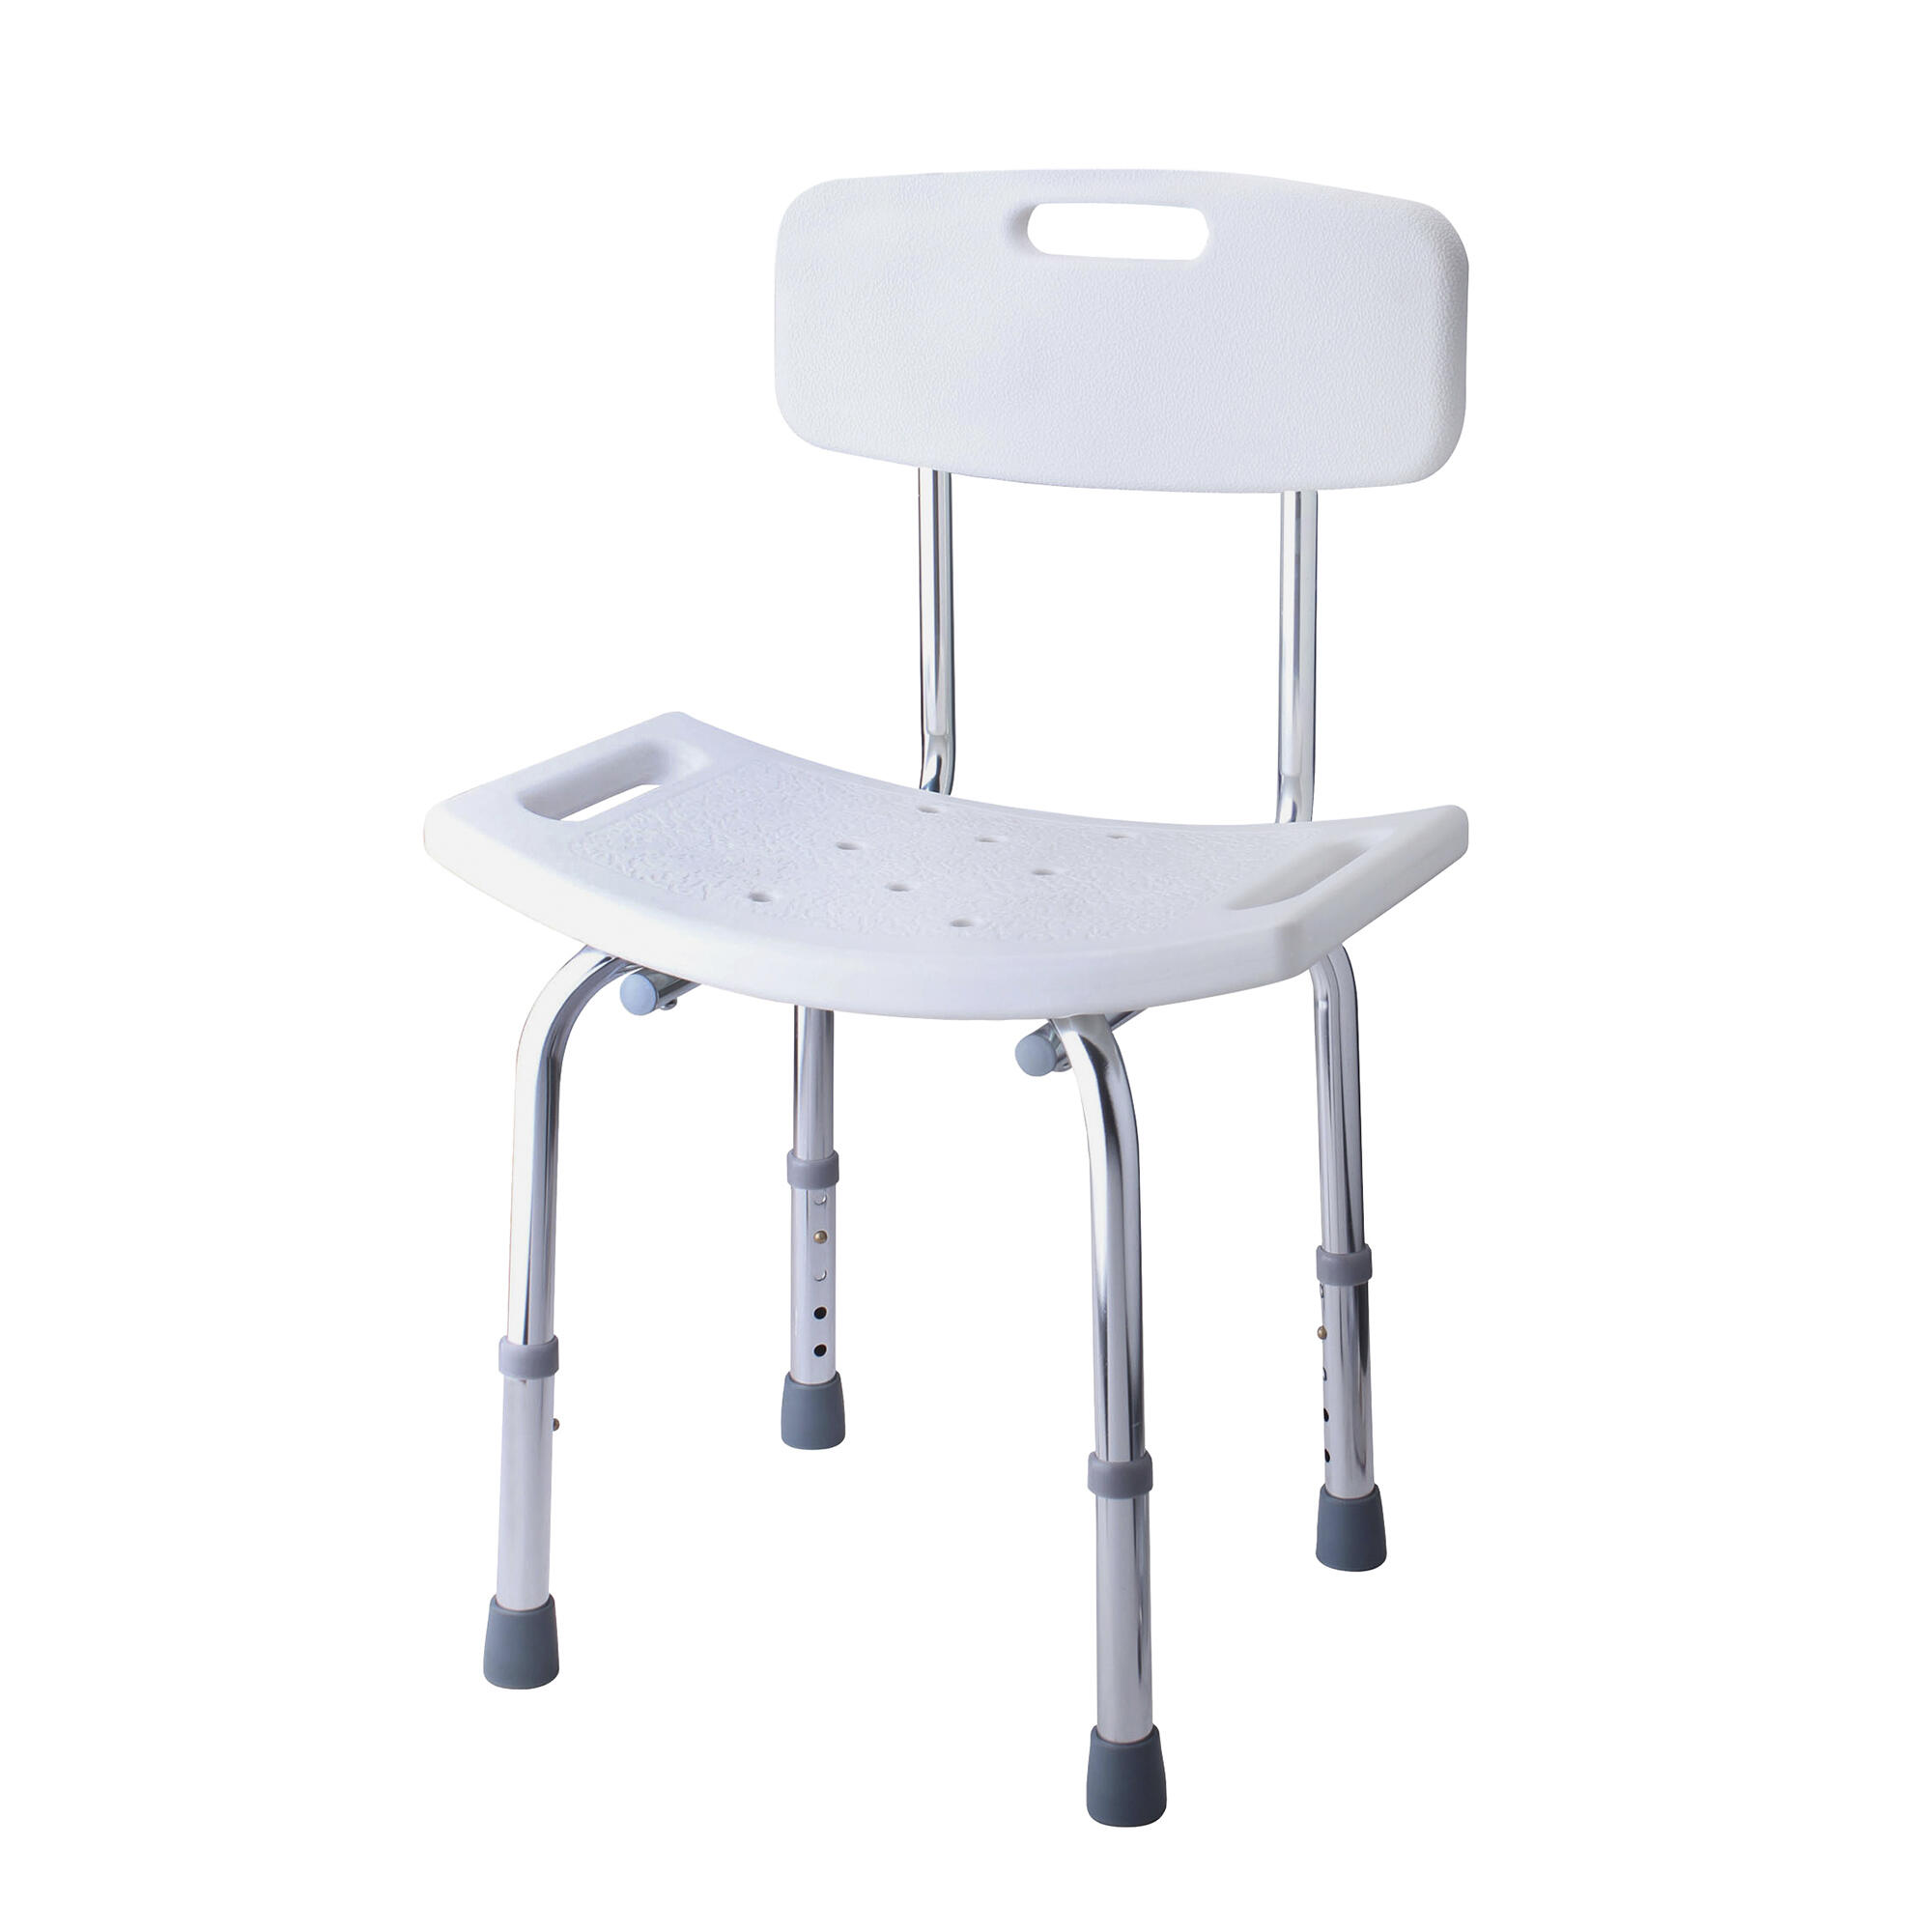 silla para ducha ancianos adultos mayores sillas banco de Baño bano  aluminio aju